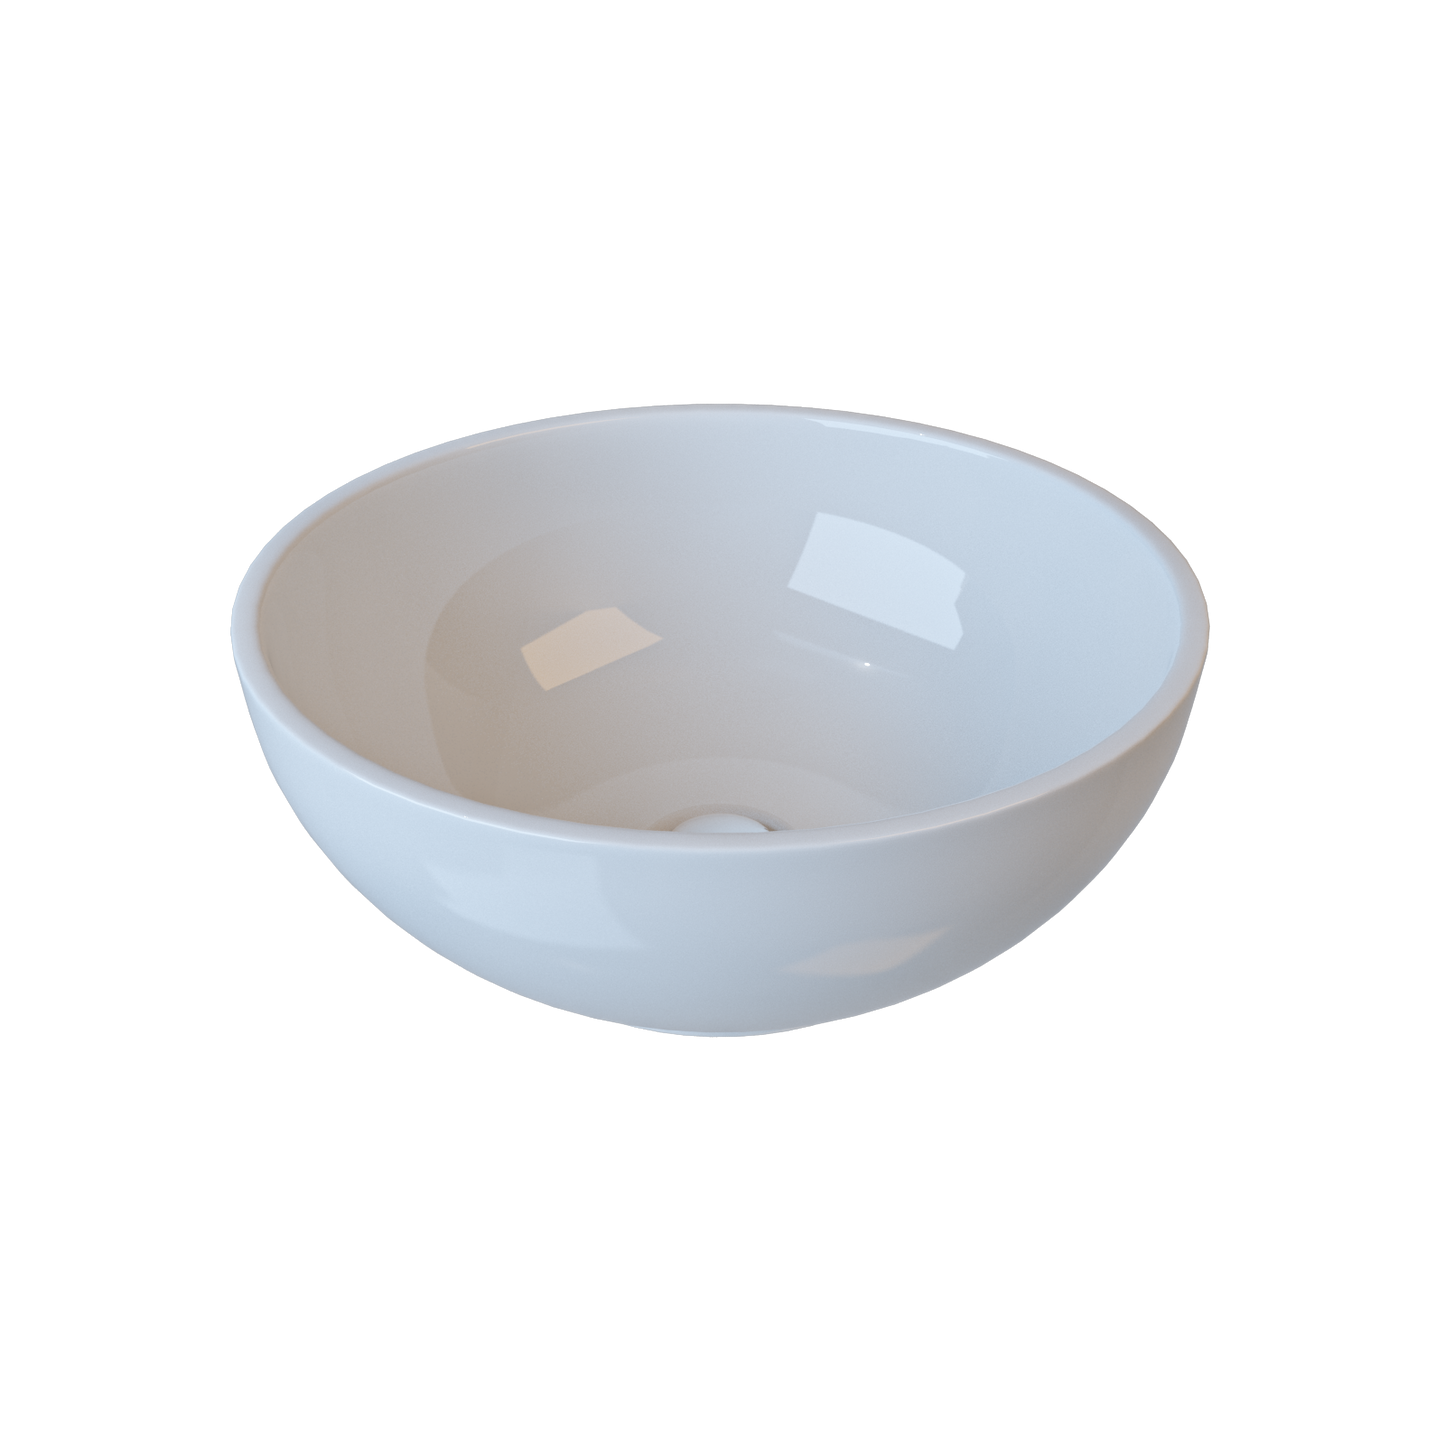 Round Ceramic Countertop Basin Gloss White 400x400x155mm